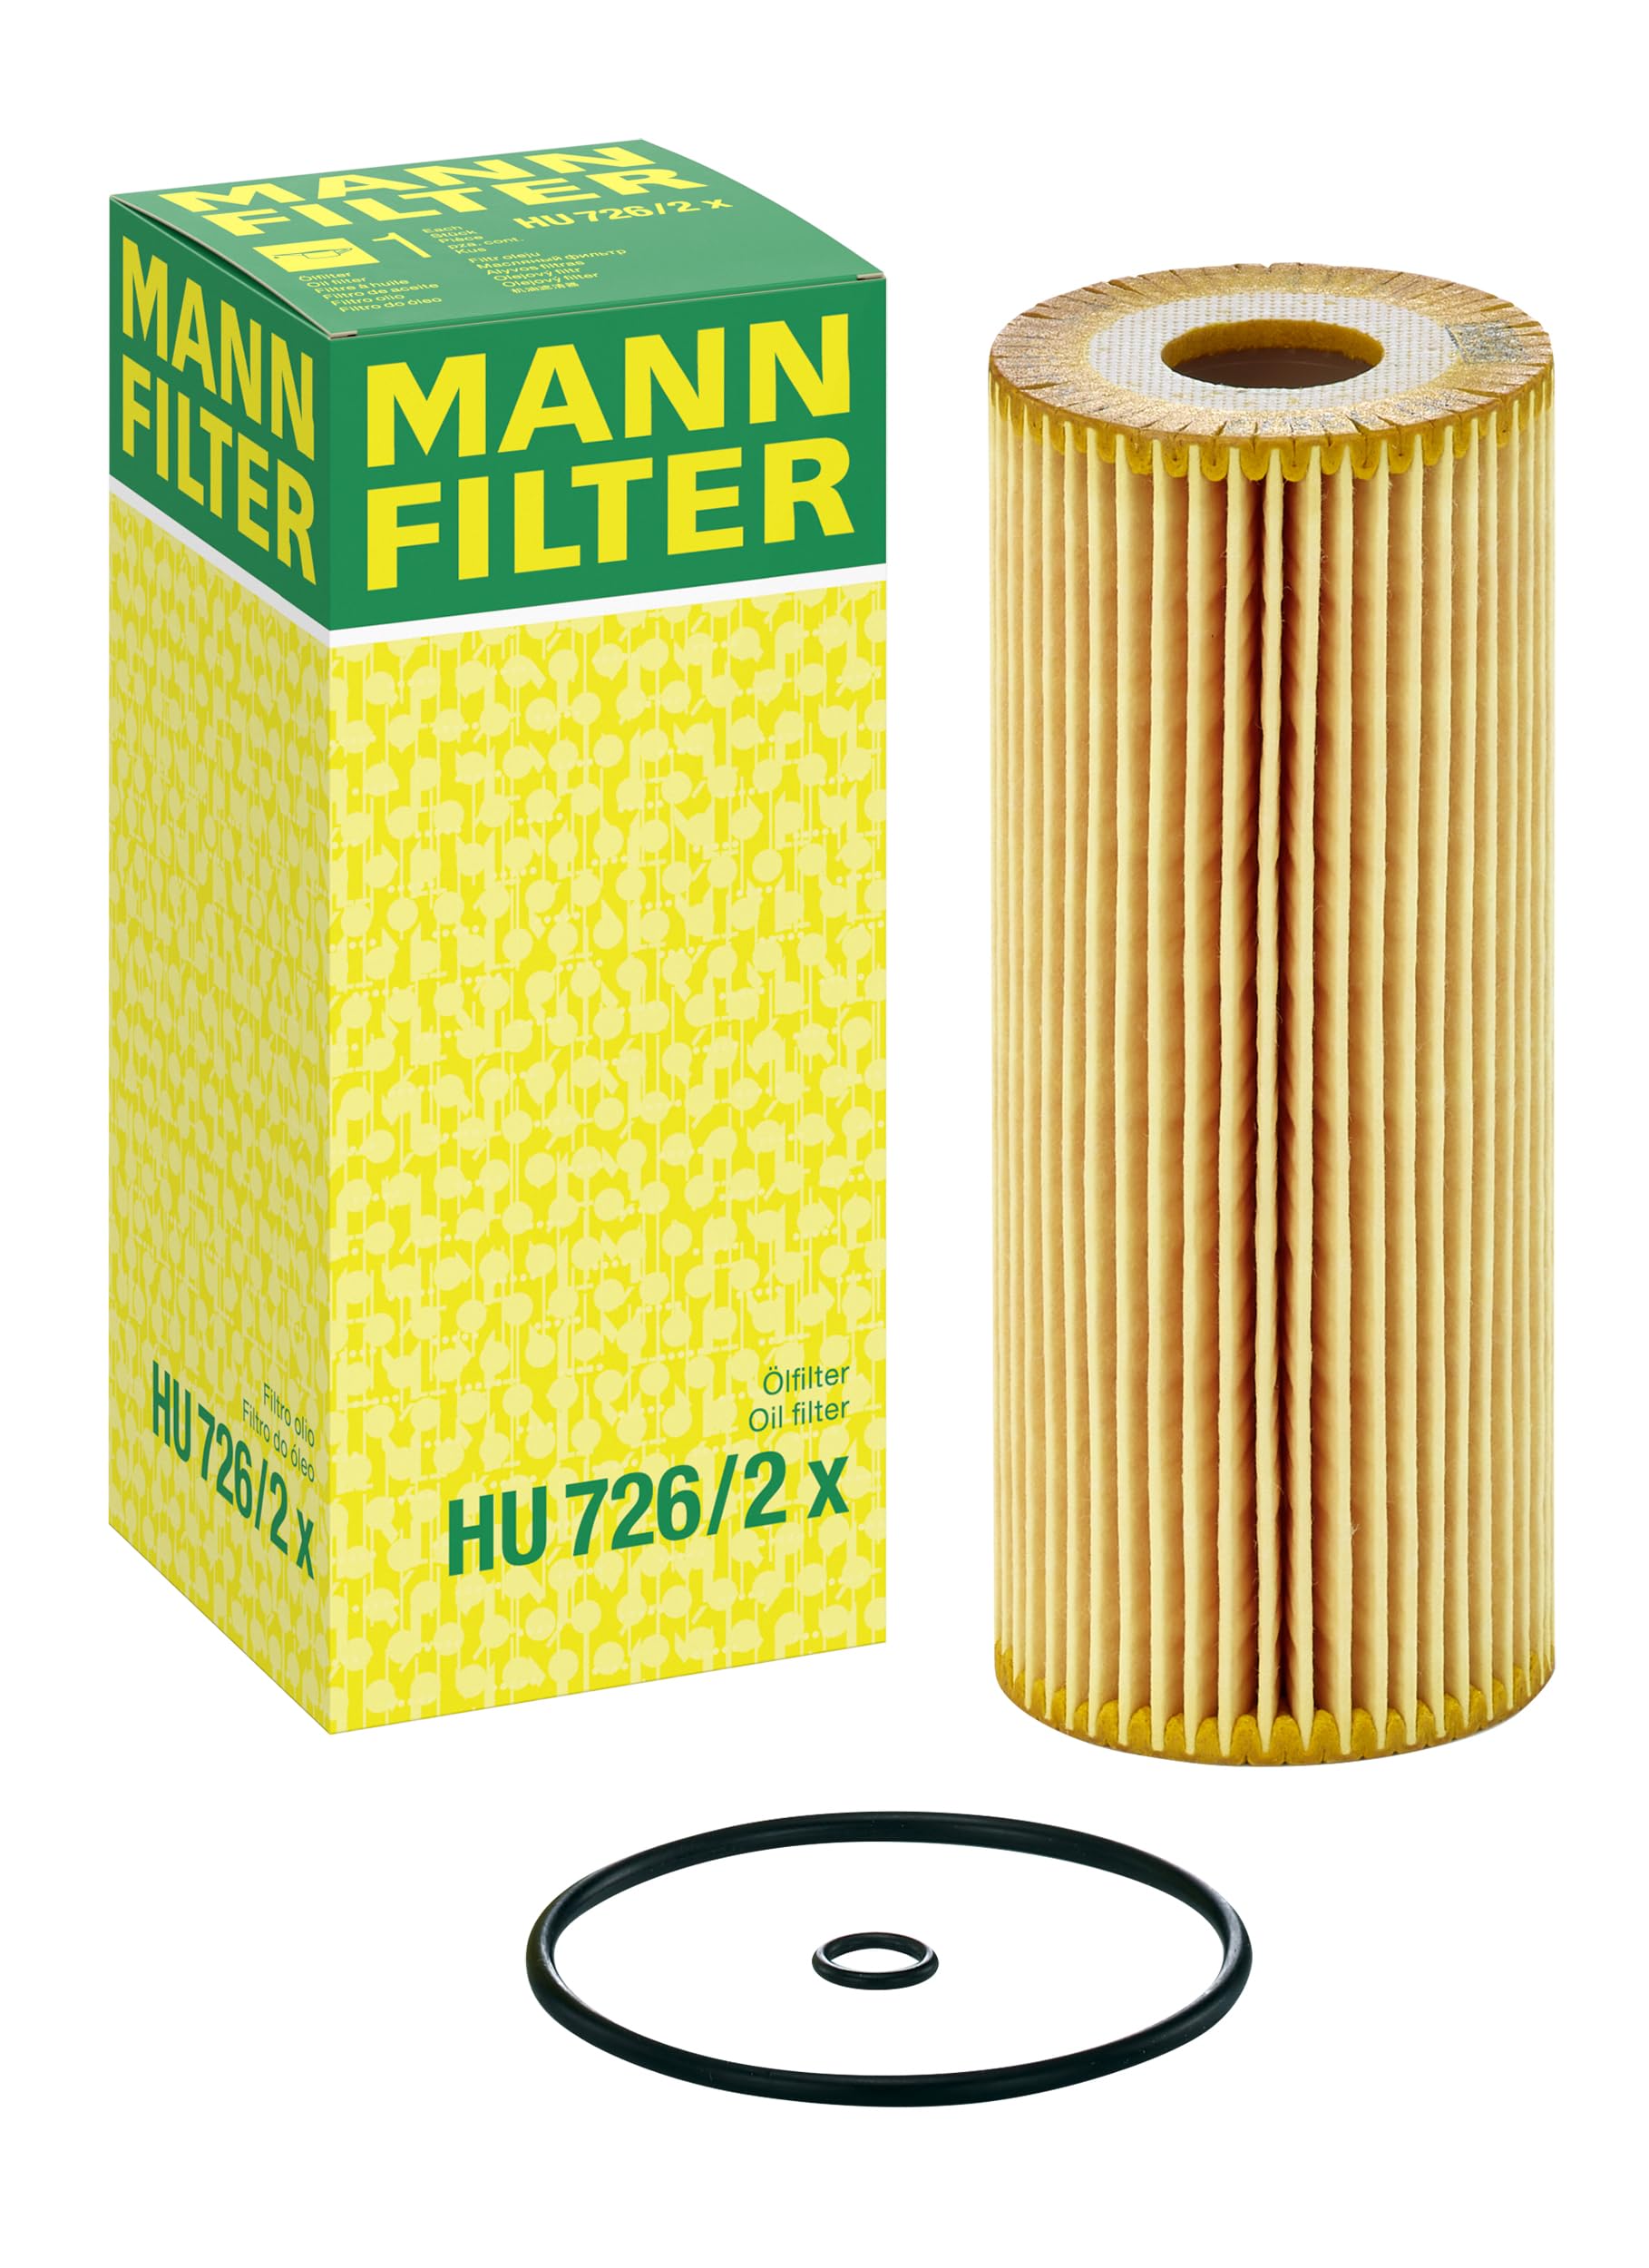 MANN-FILTER HU 726/2 X Ölfilter – Für PKW von MANN-FILTER